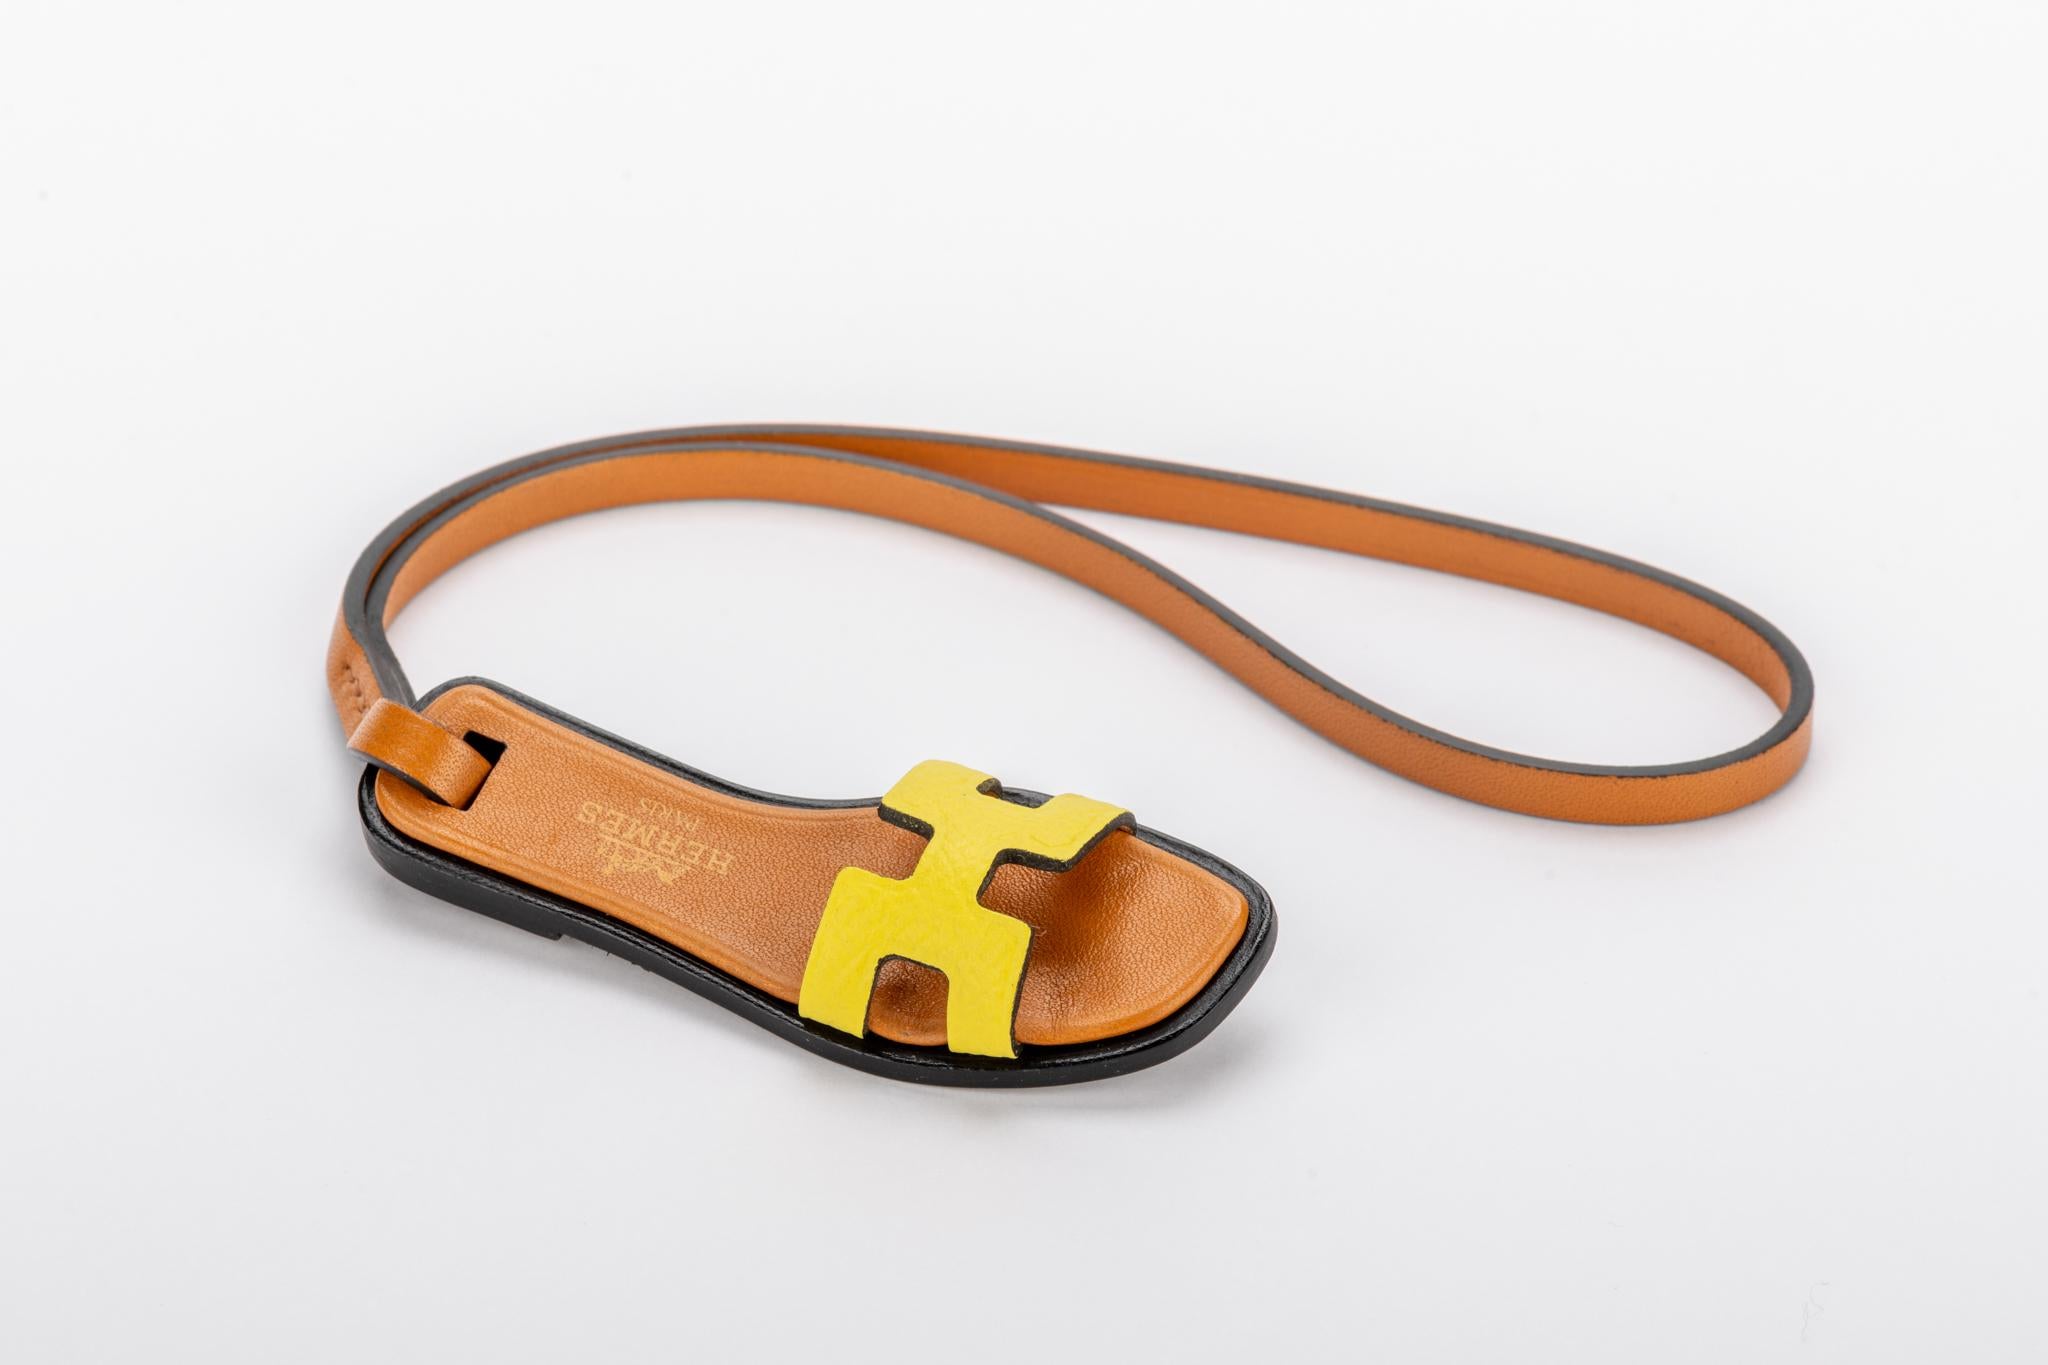 Hermes Sammlerstück und weltweit ausverkauft Mini Oran Bag Charm in Gold und gelbem Leder Combo. Kommt mit Originalverpackung.